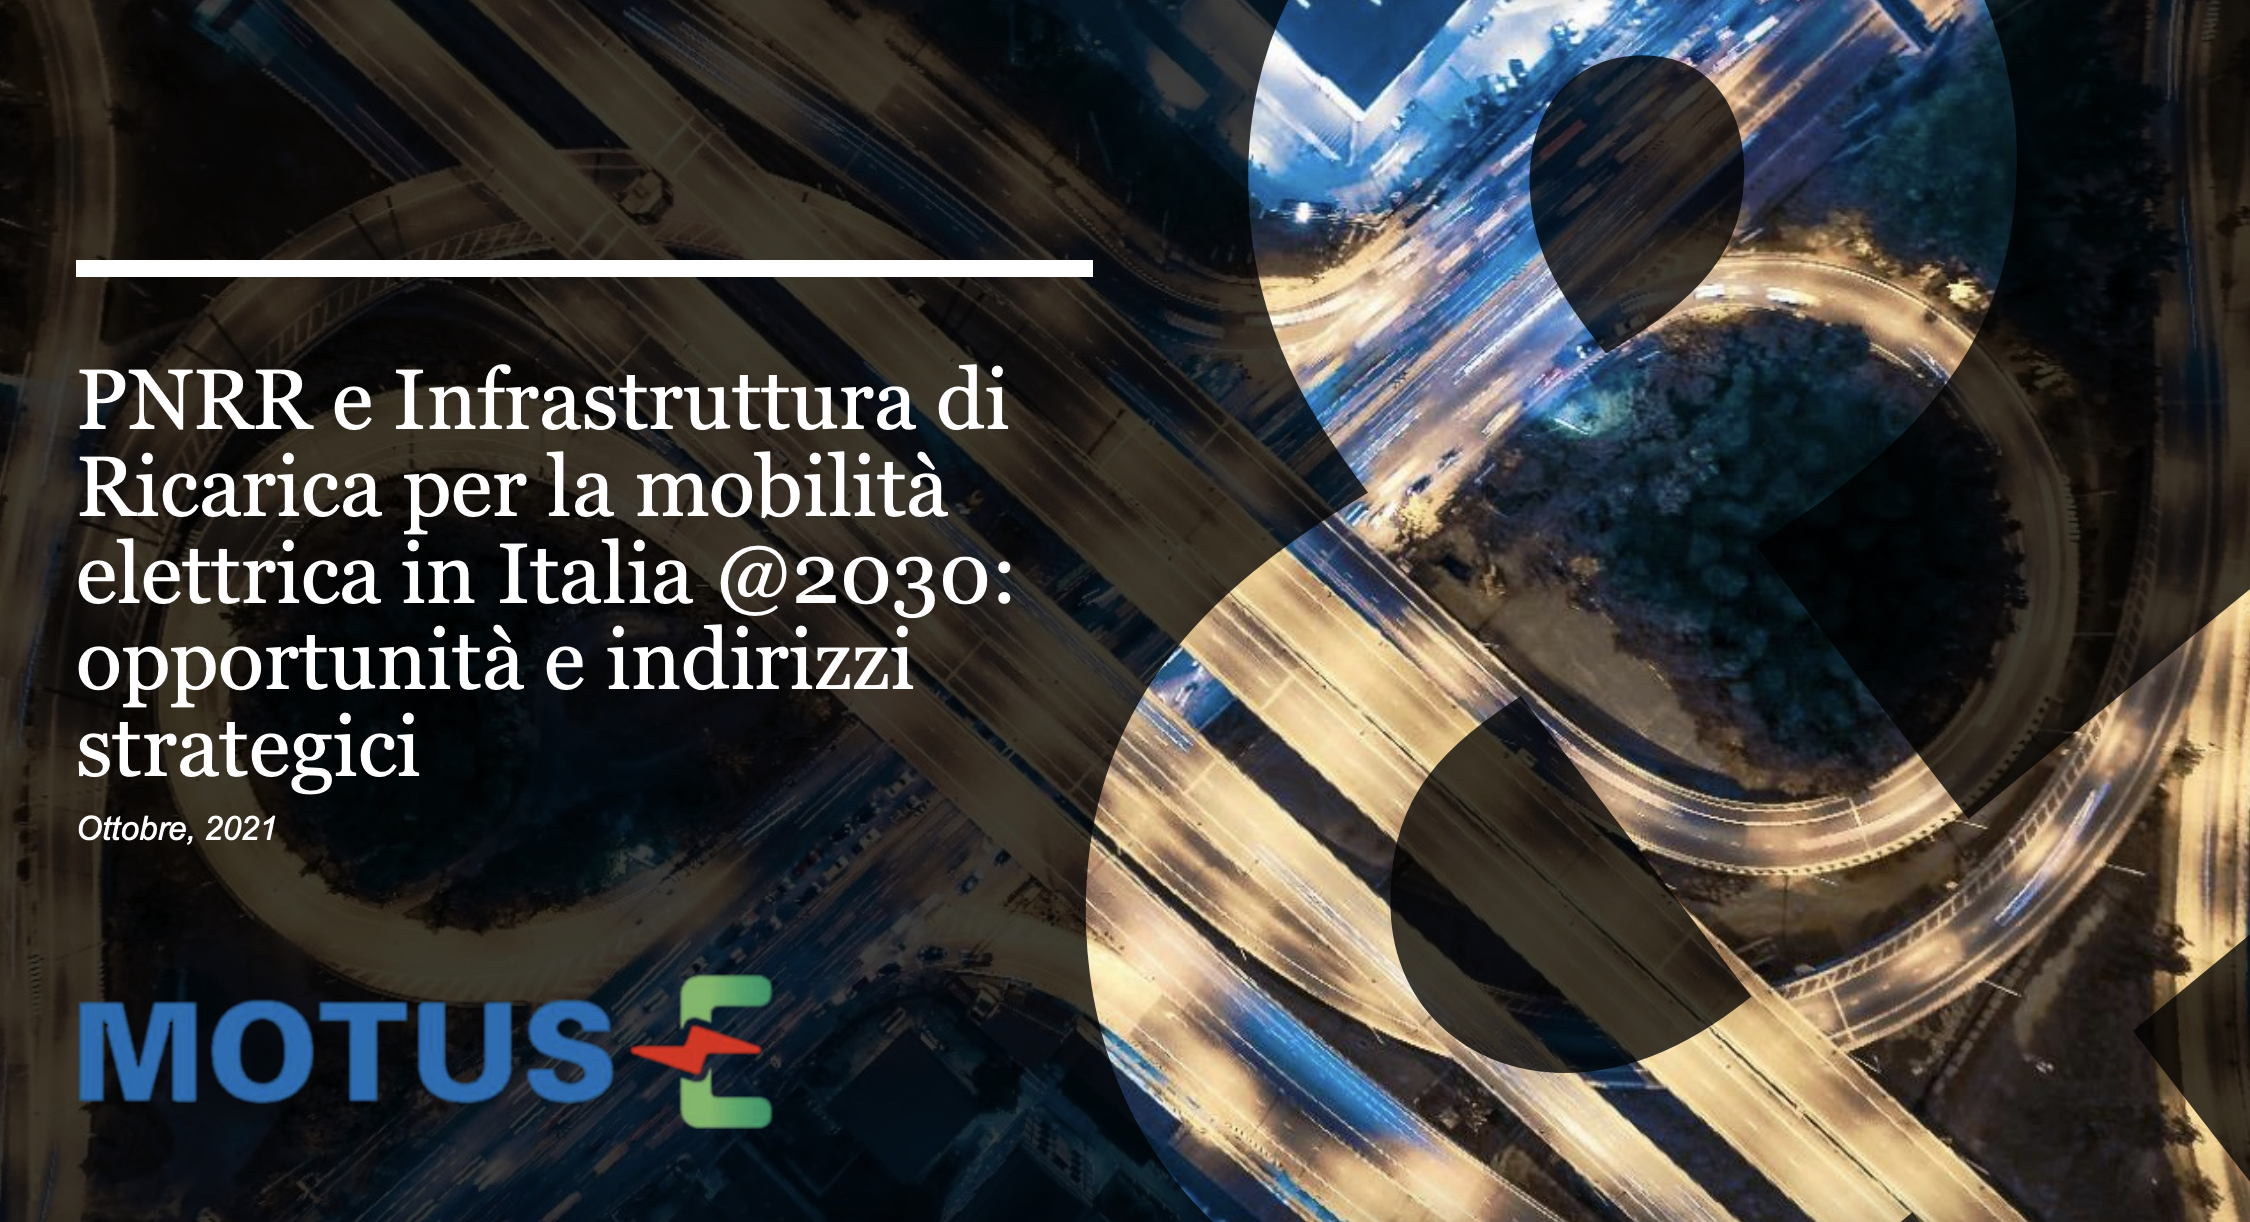 PNRR e Infrastruttura di Ricarica per la mobilità elettrica in Italia @2030: opportunità e indirizzi strategici